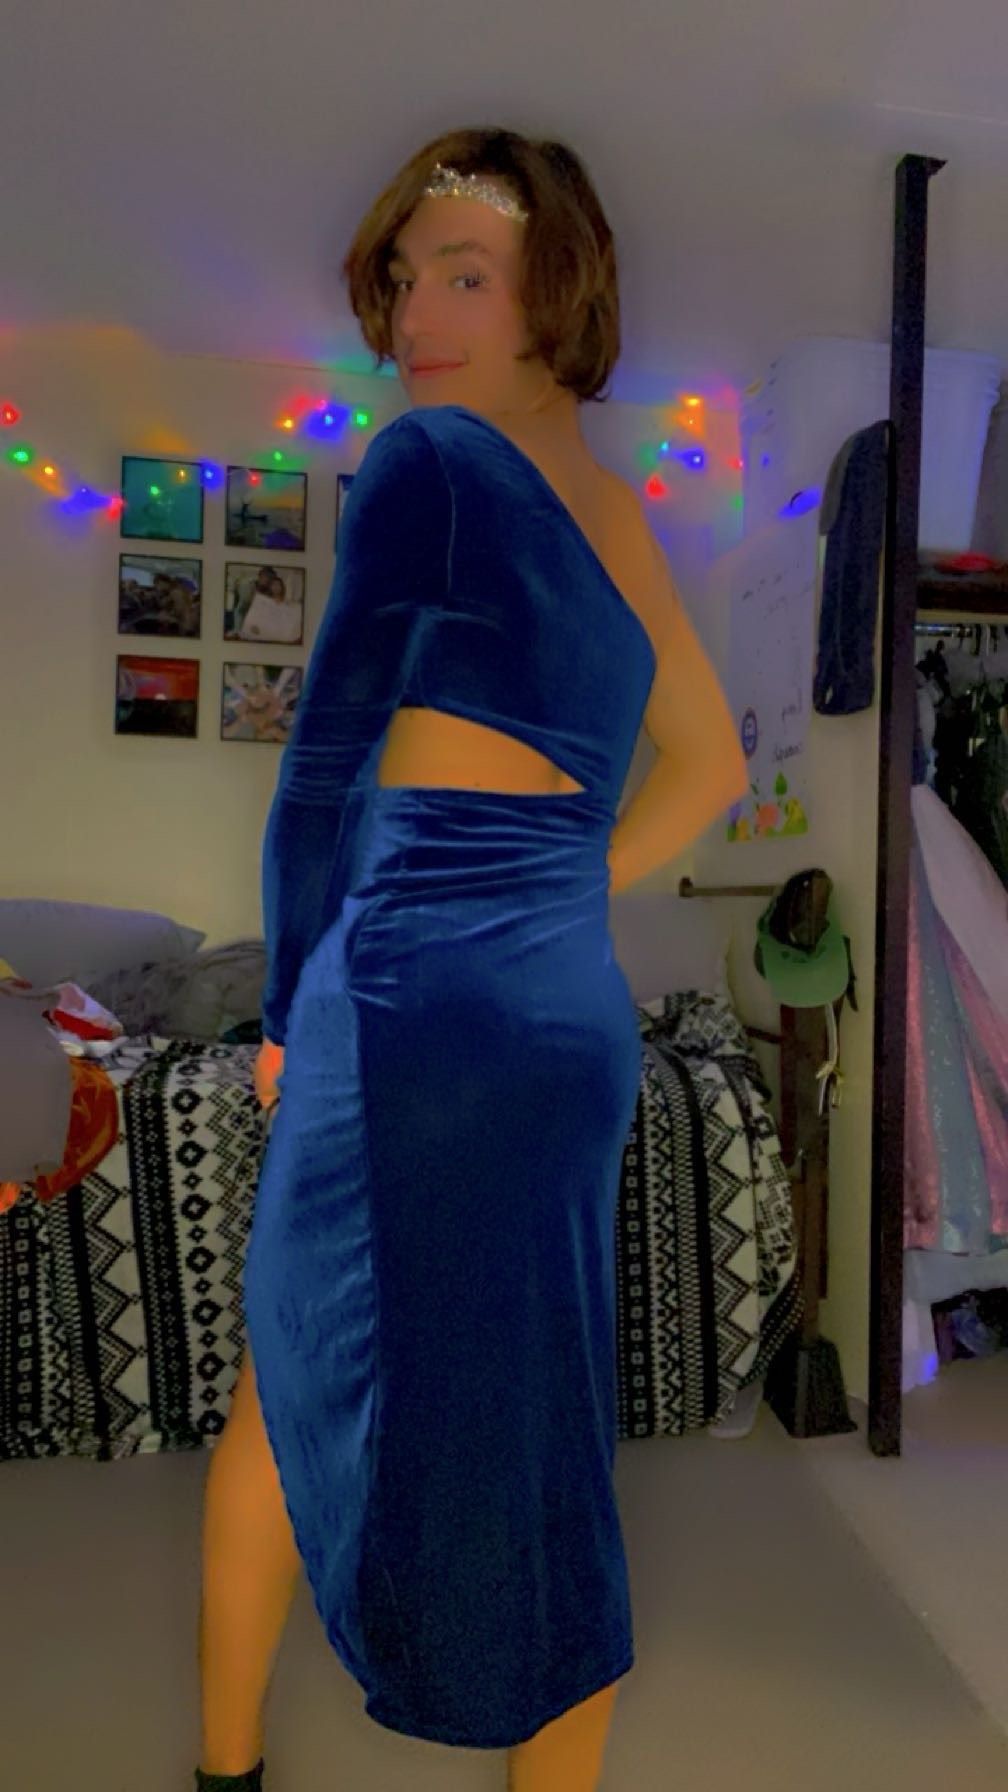 Size S Prom One Shoulder Blue Side Slit Dress on Queenly